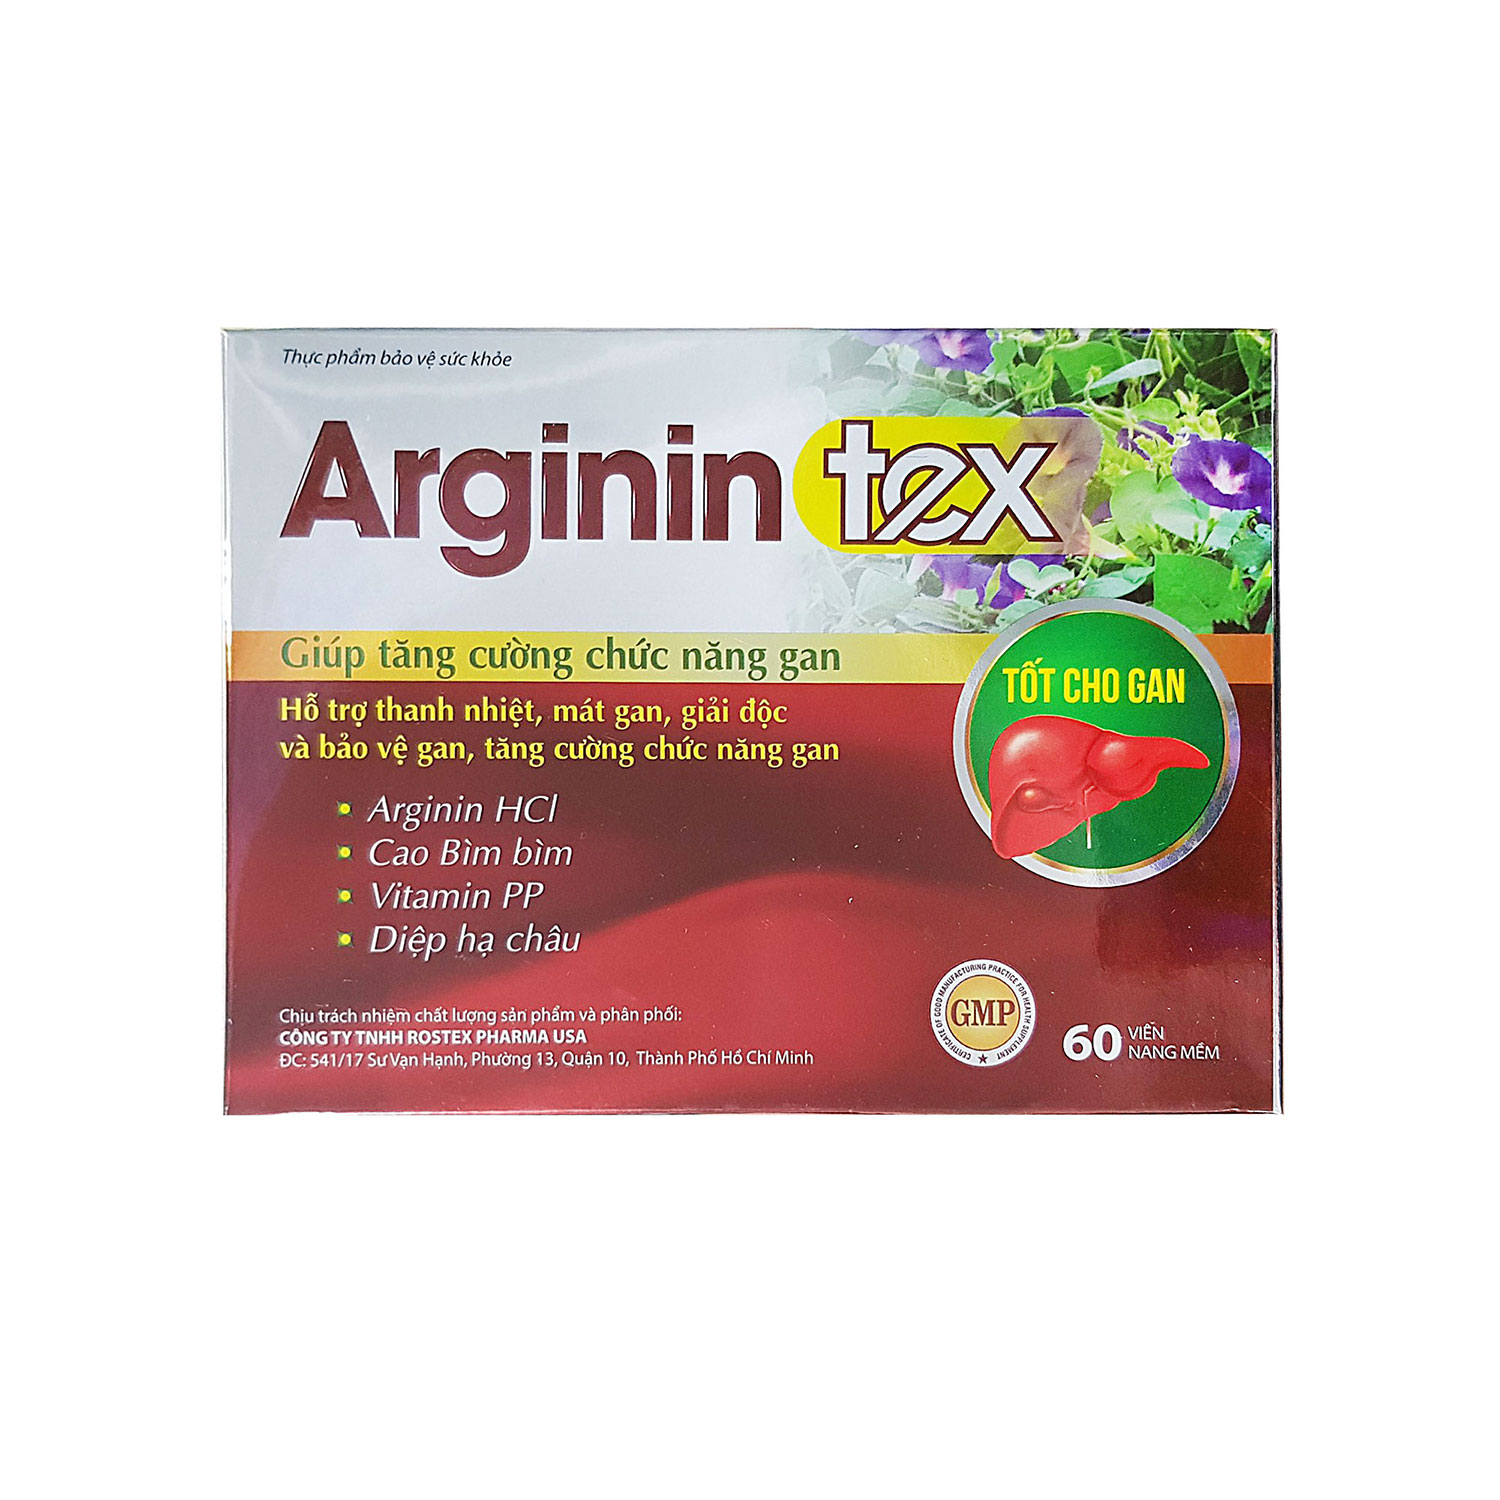 Viên uống Arginin Tex hỗ trợ thanh nhiệt, mát gan, giải độc bảo vệ gan tăng cường chức năng gan